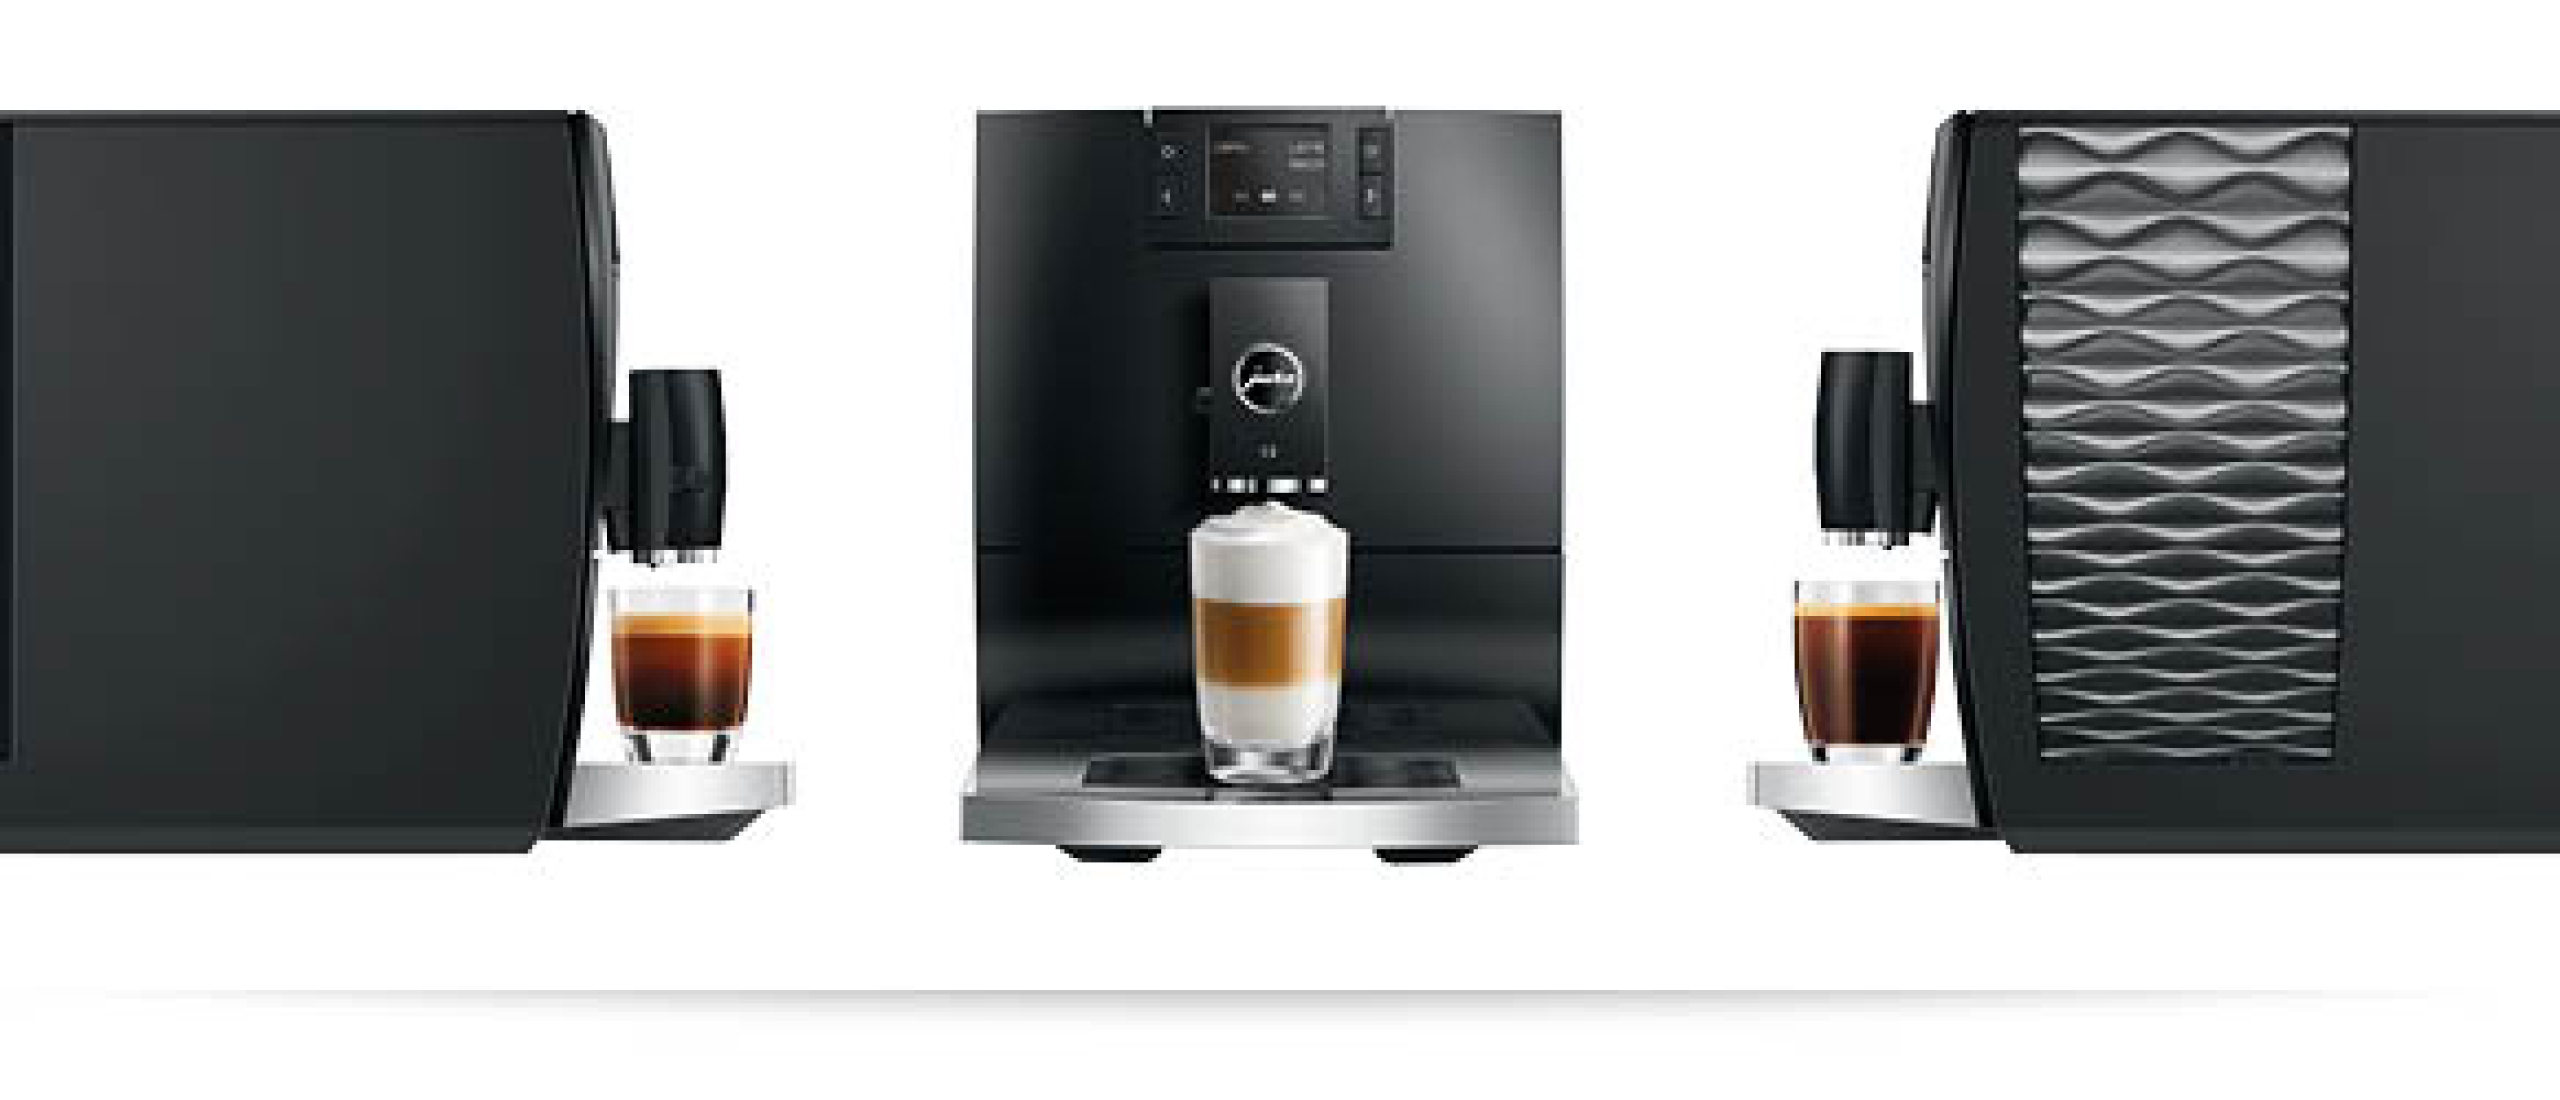 Ontdek de ultieme koffie-ervaring met de JURA C8: een complete review!